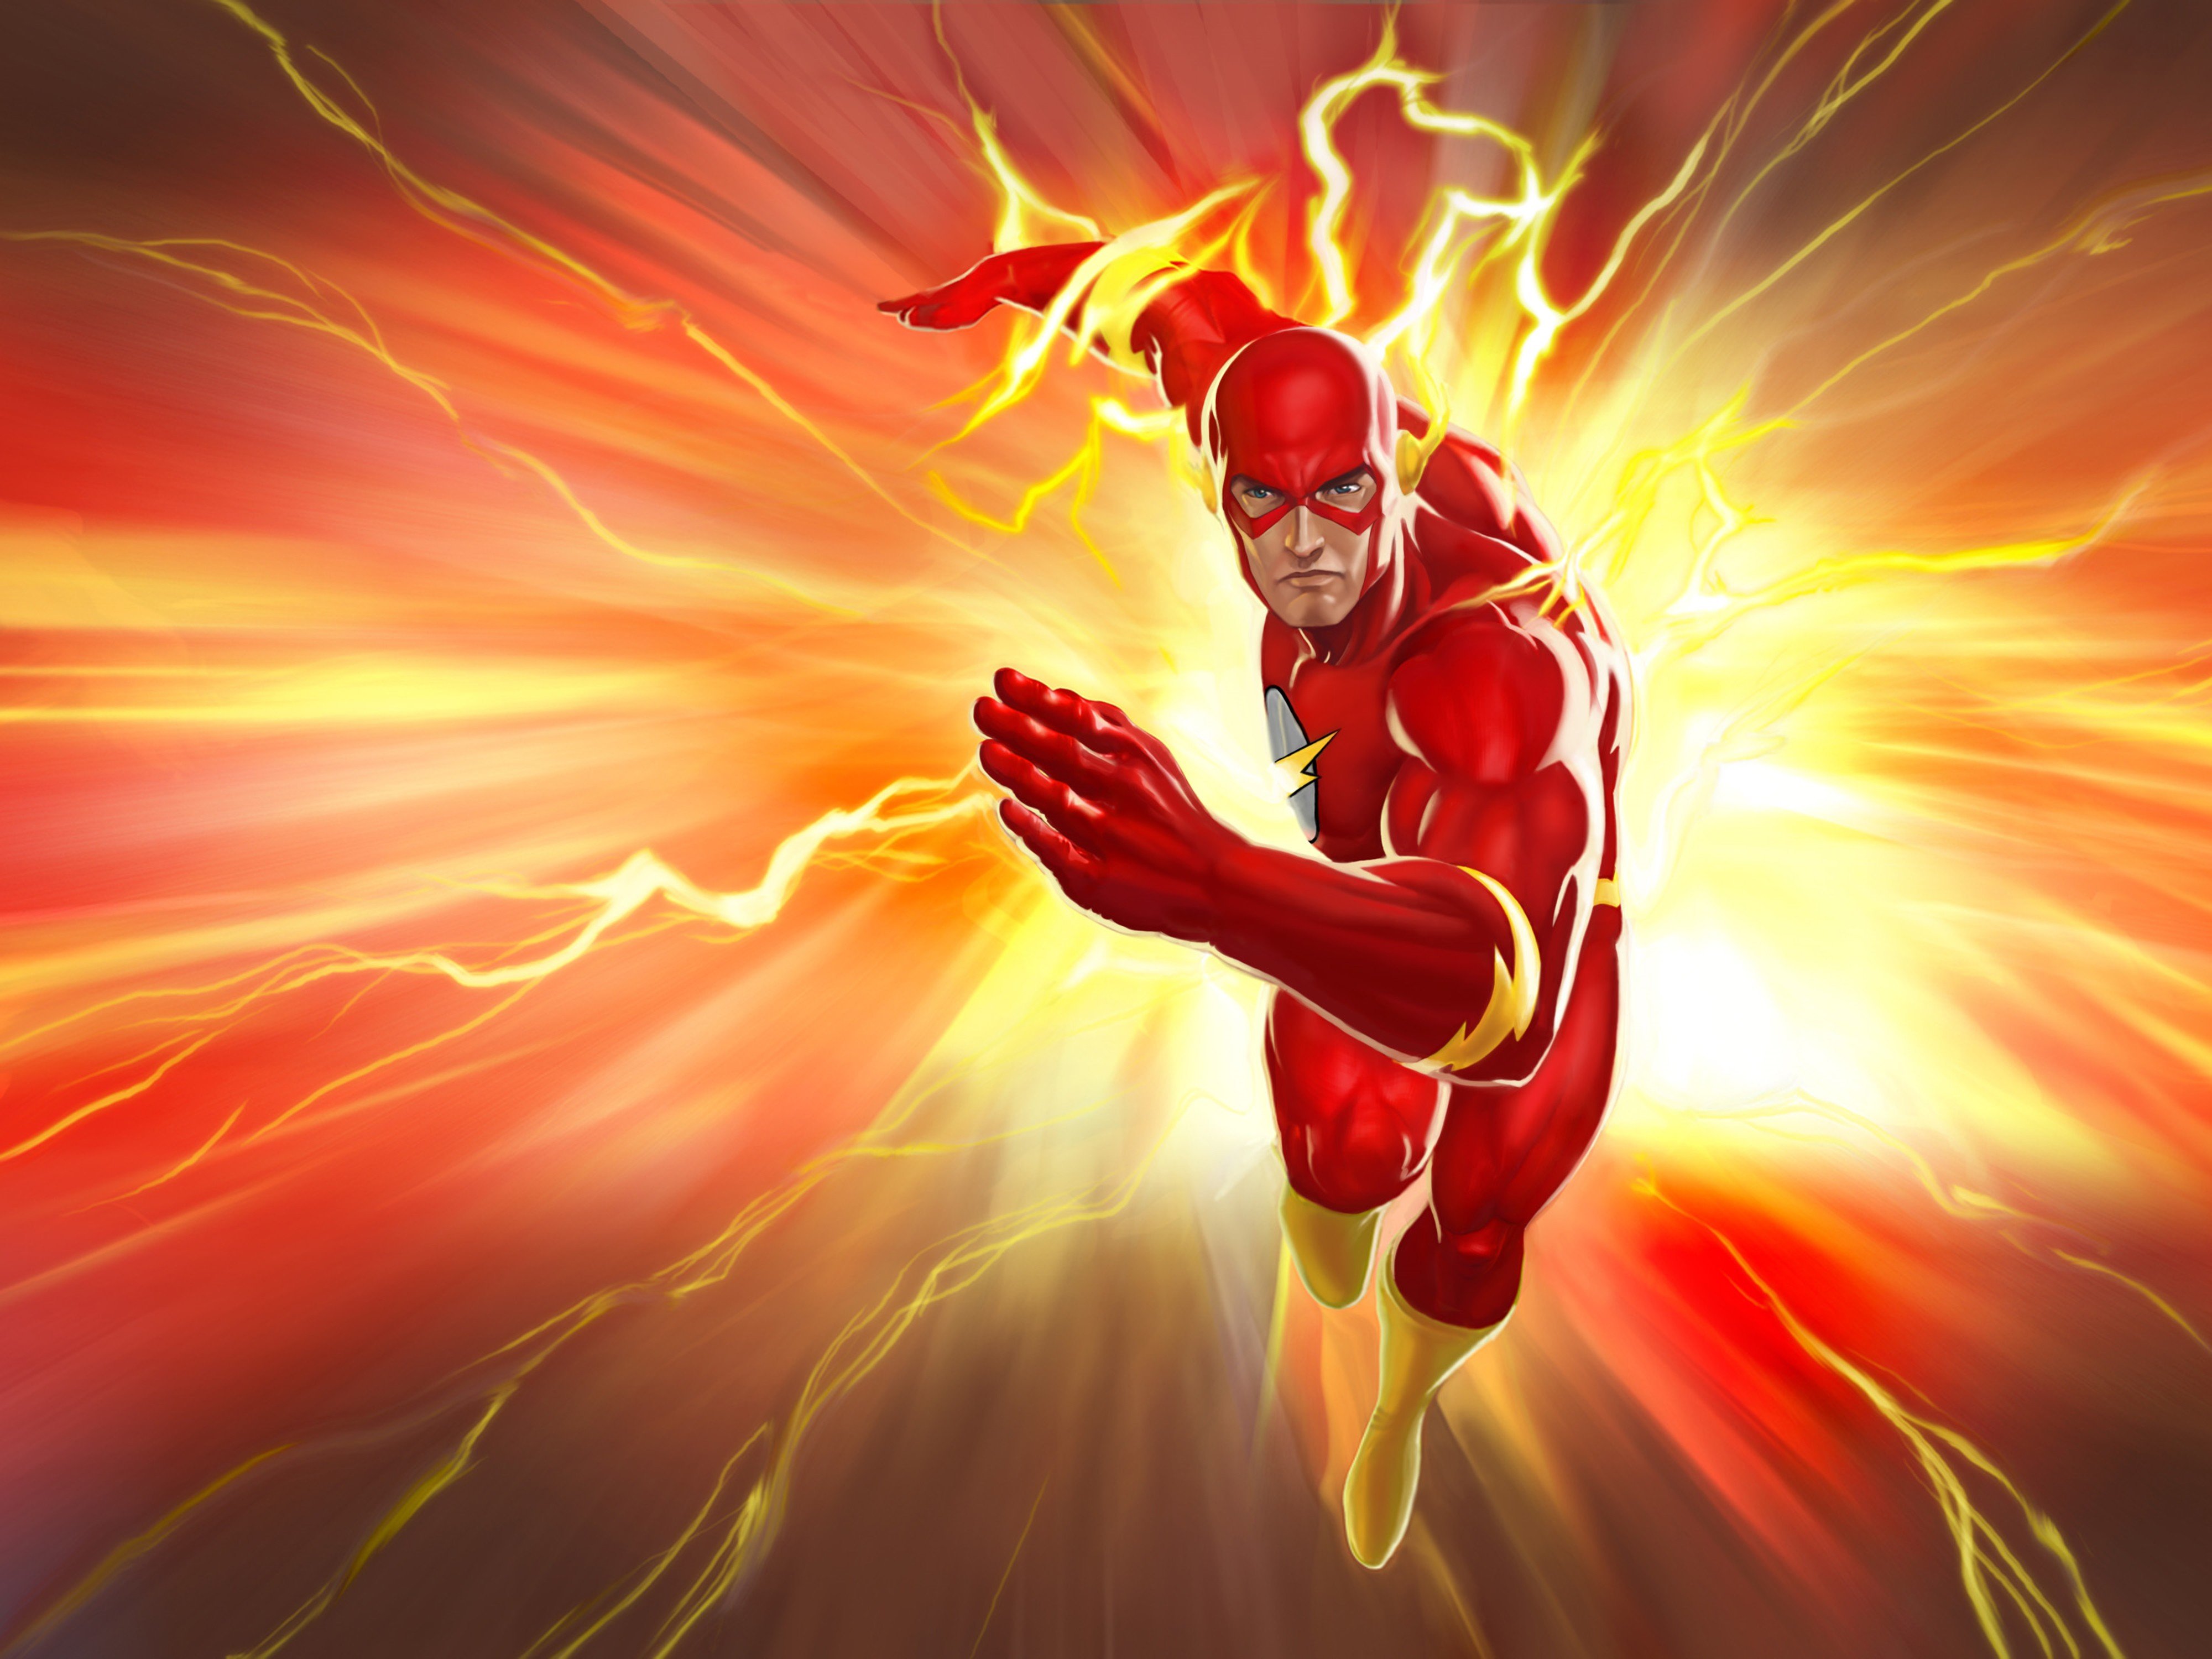  superheroes comics flash wallpaper 4000x3000 345409 WallpaperUP 4000x3000